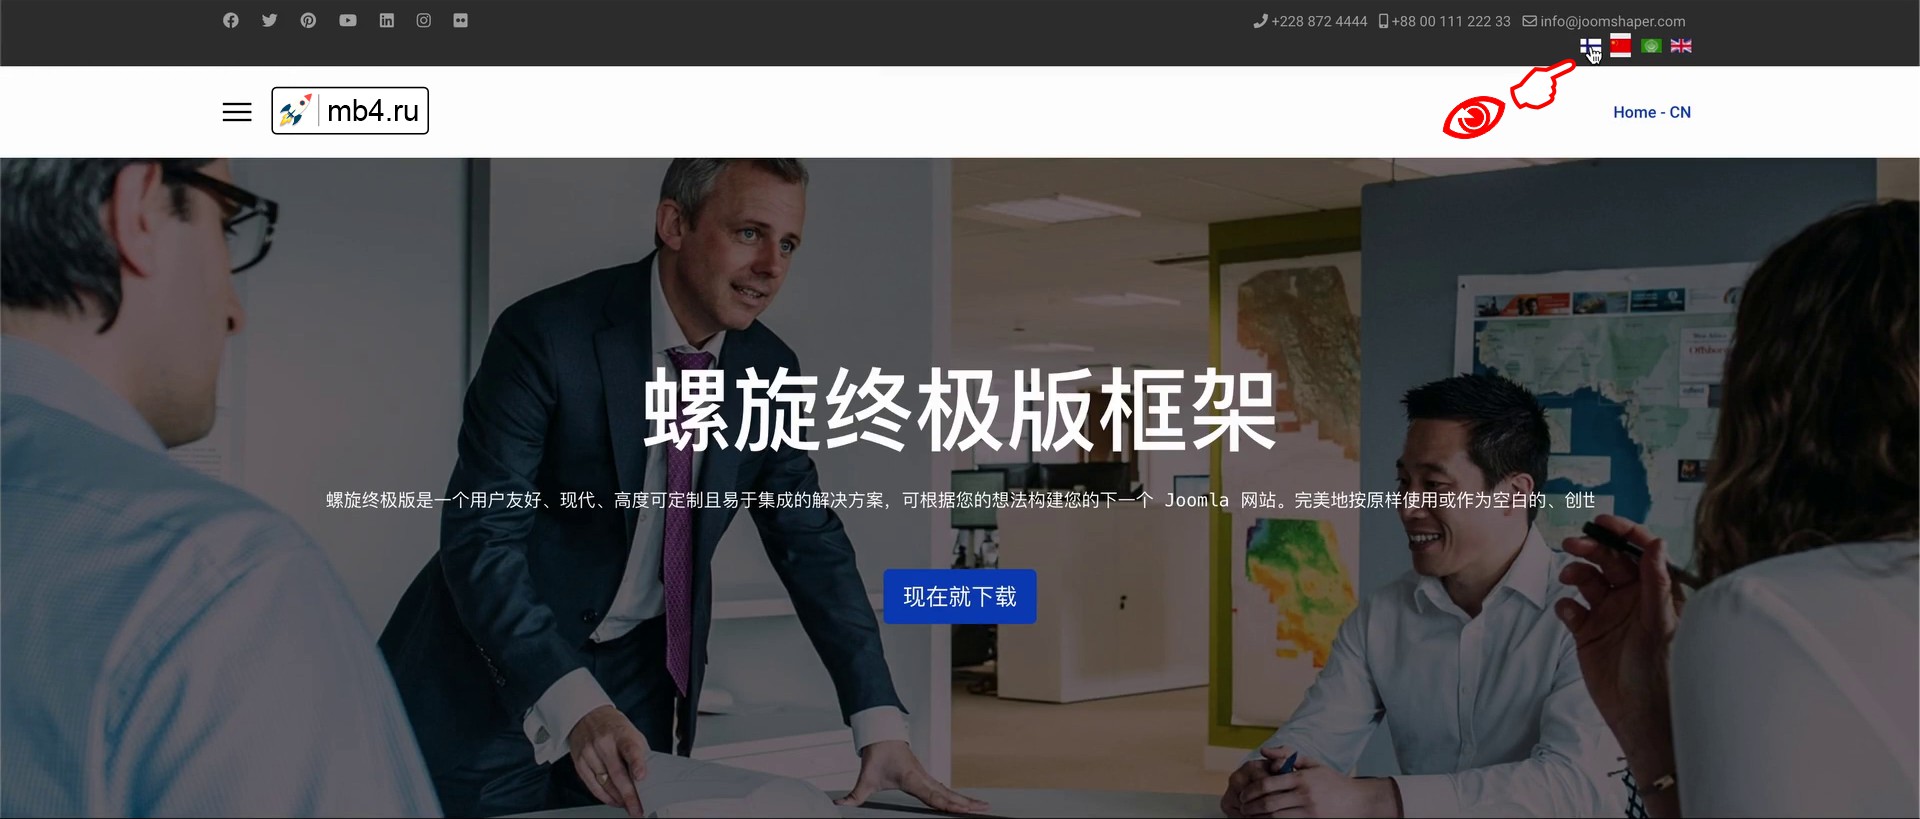 Создание многоязычный сайт на Joomla с помощью шаблона Helix Ultimate